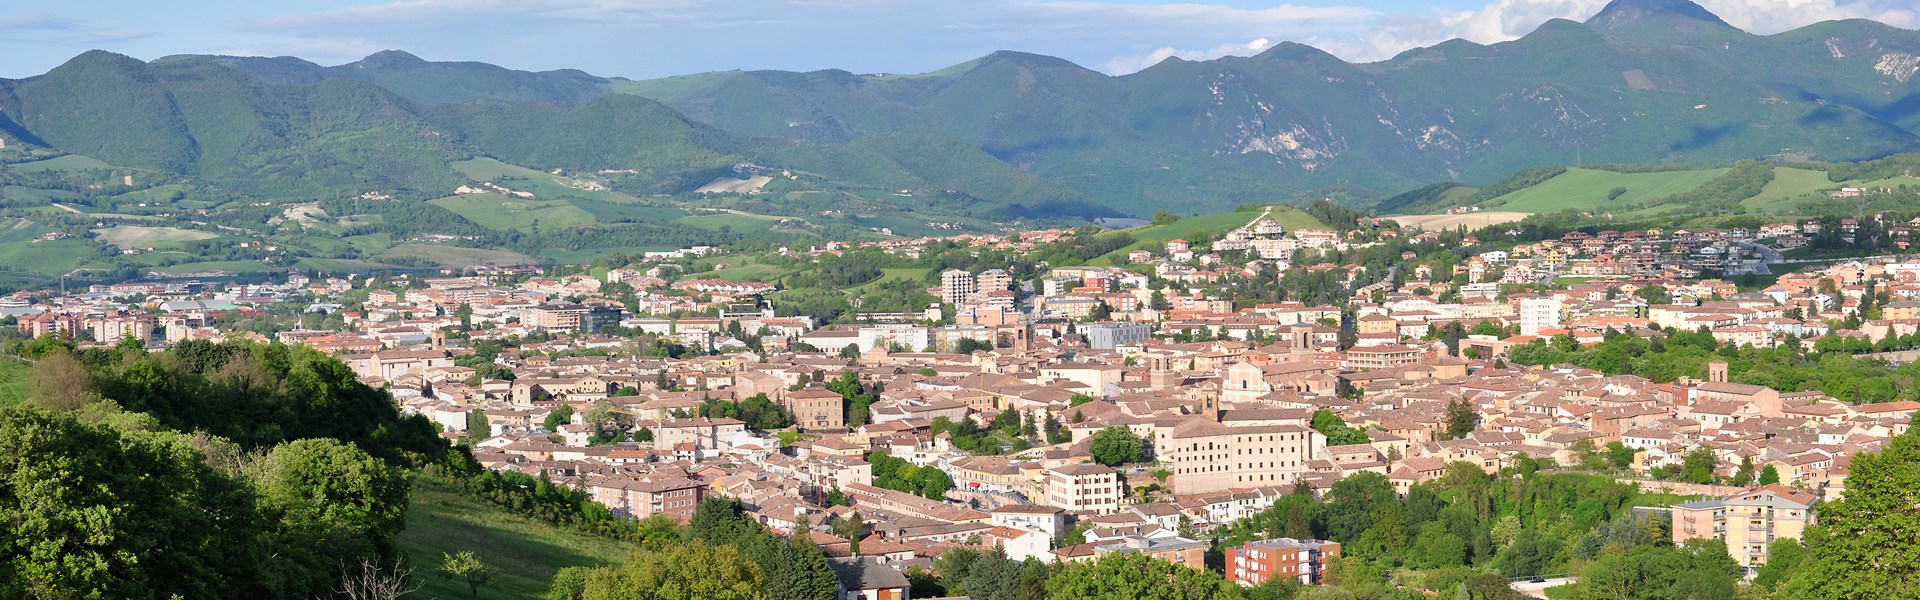 Fabriano - Panorama